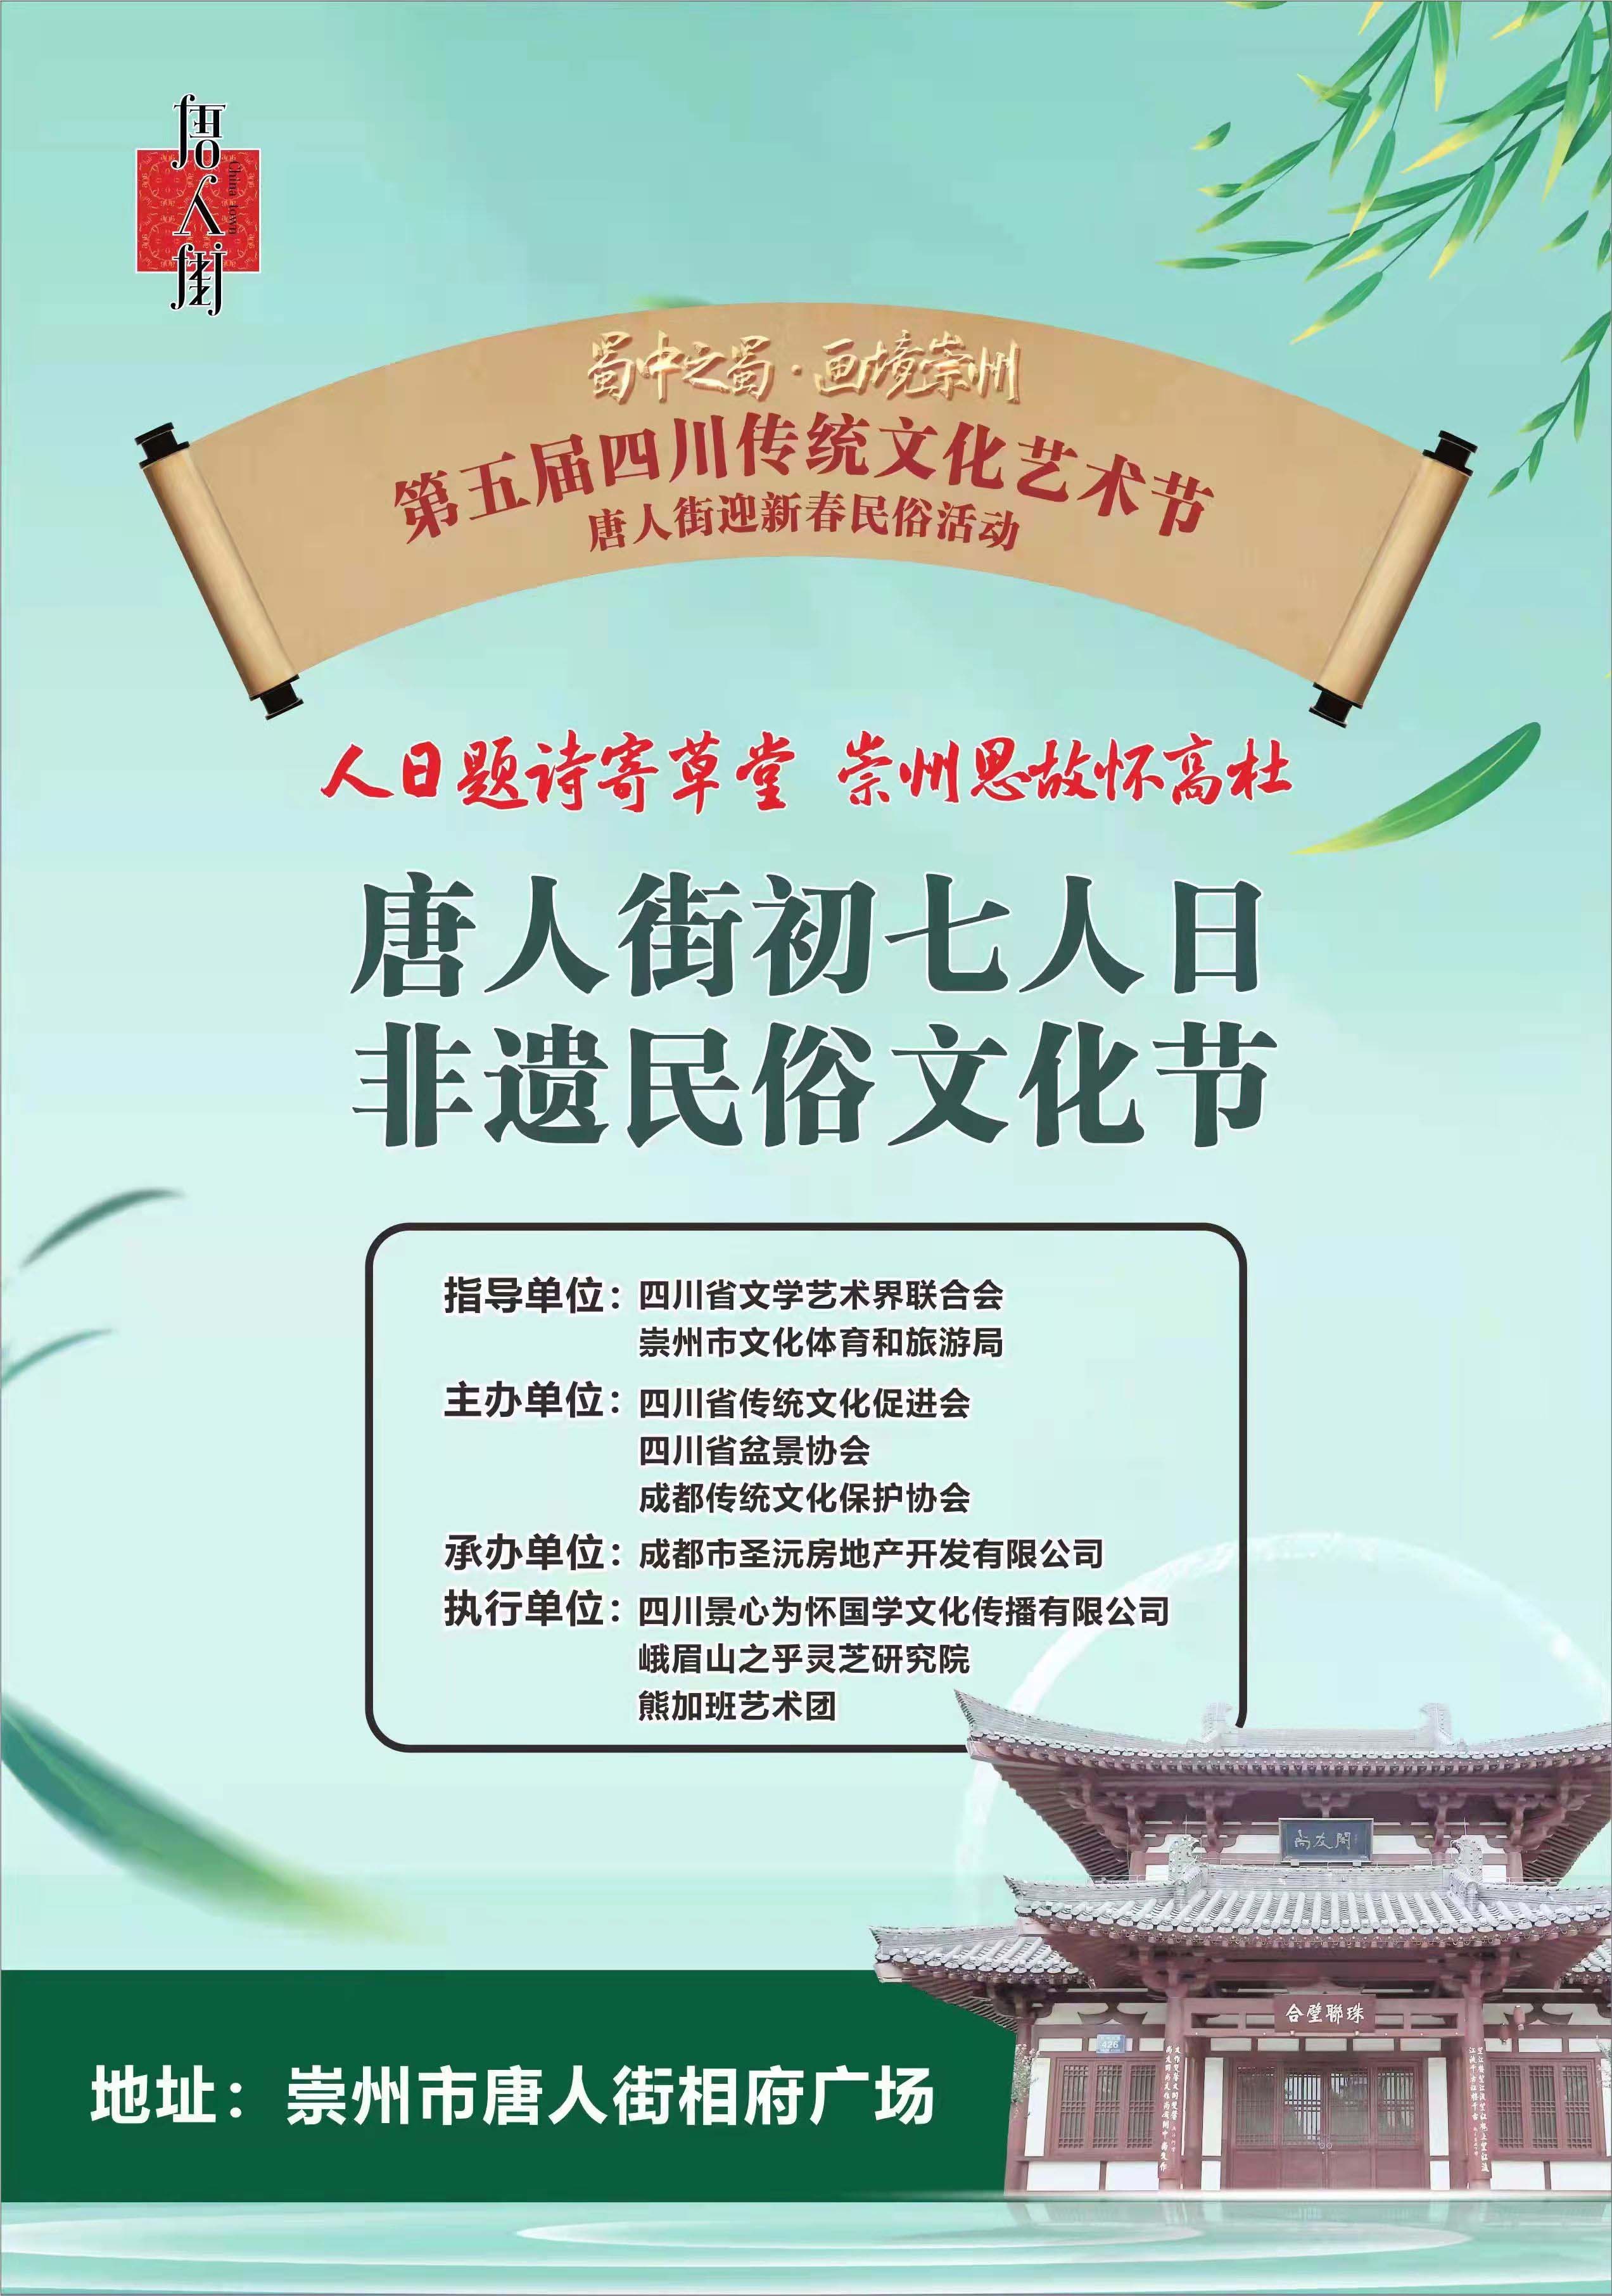 祟州市初七人日非遗民俗文化节在唐人街举办(图2)